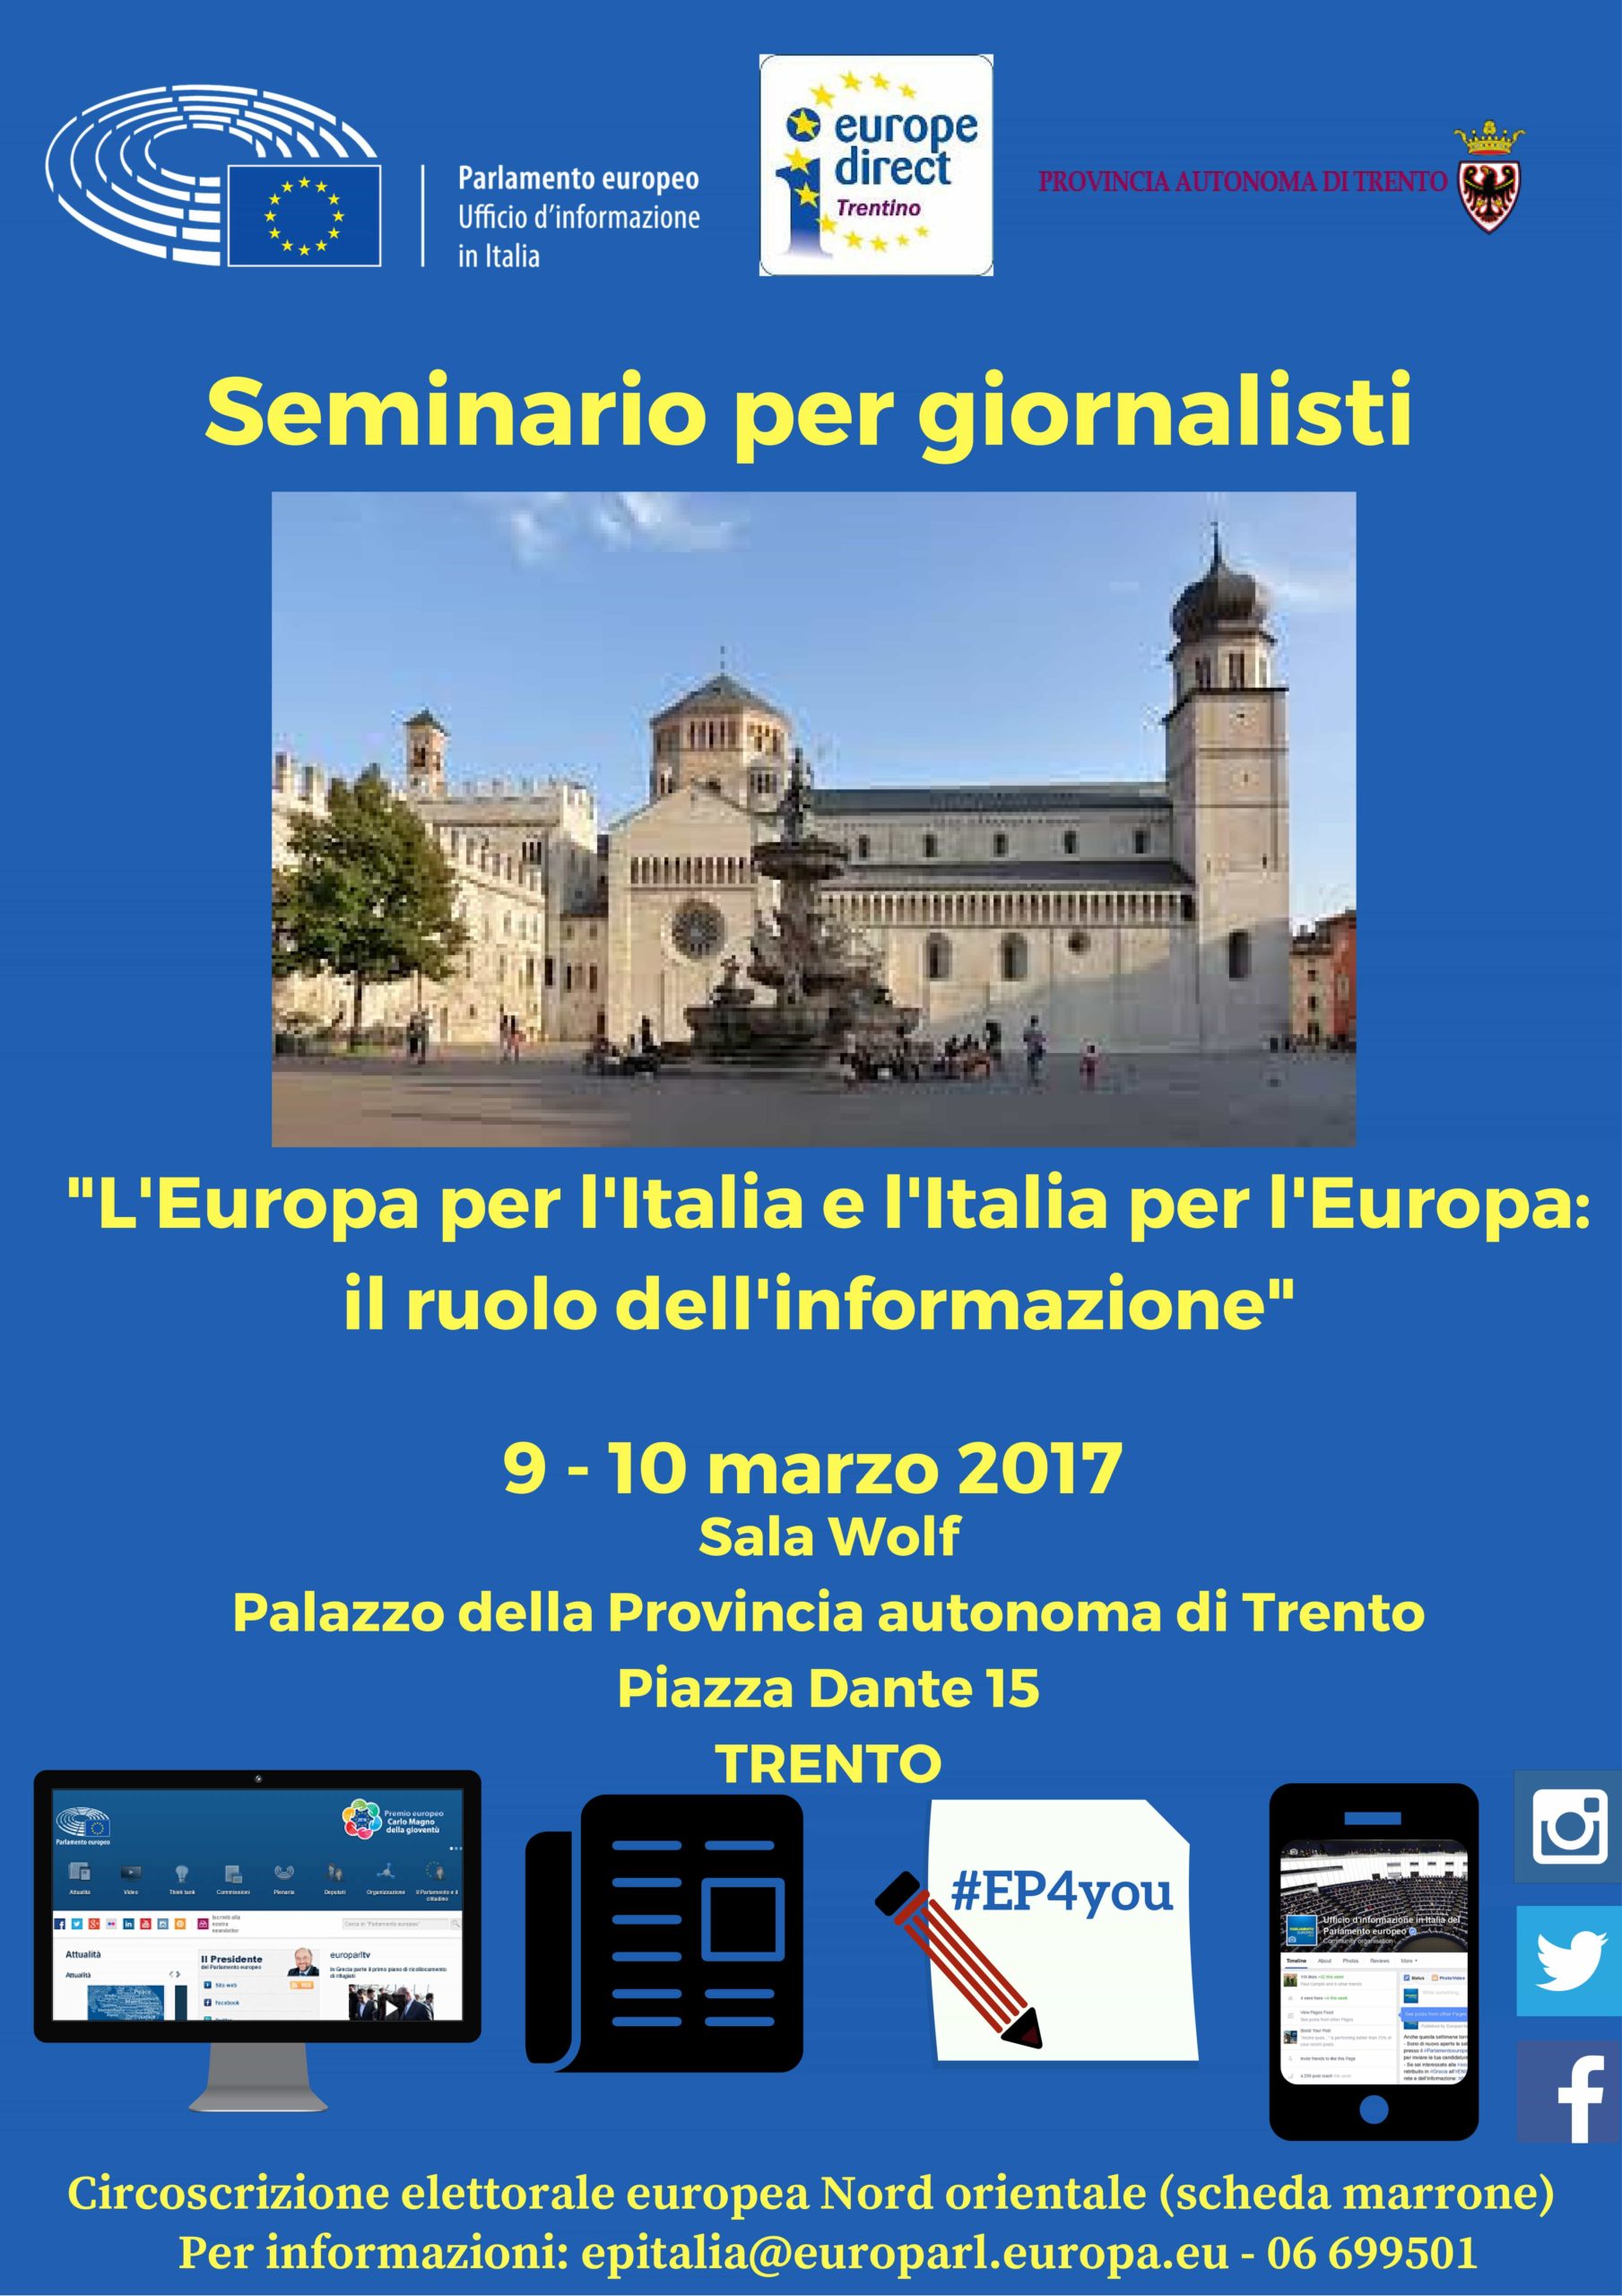 Seminario "L'Europa per l'Italia e l'Italia per l'Europa: il ruolo dell'informazione" @ Palazzo della Provincia Autonoma di Trento | Roma | Lazio | Italia